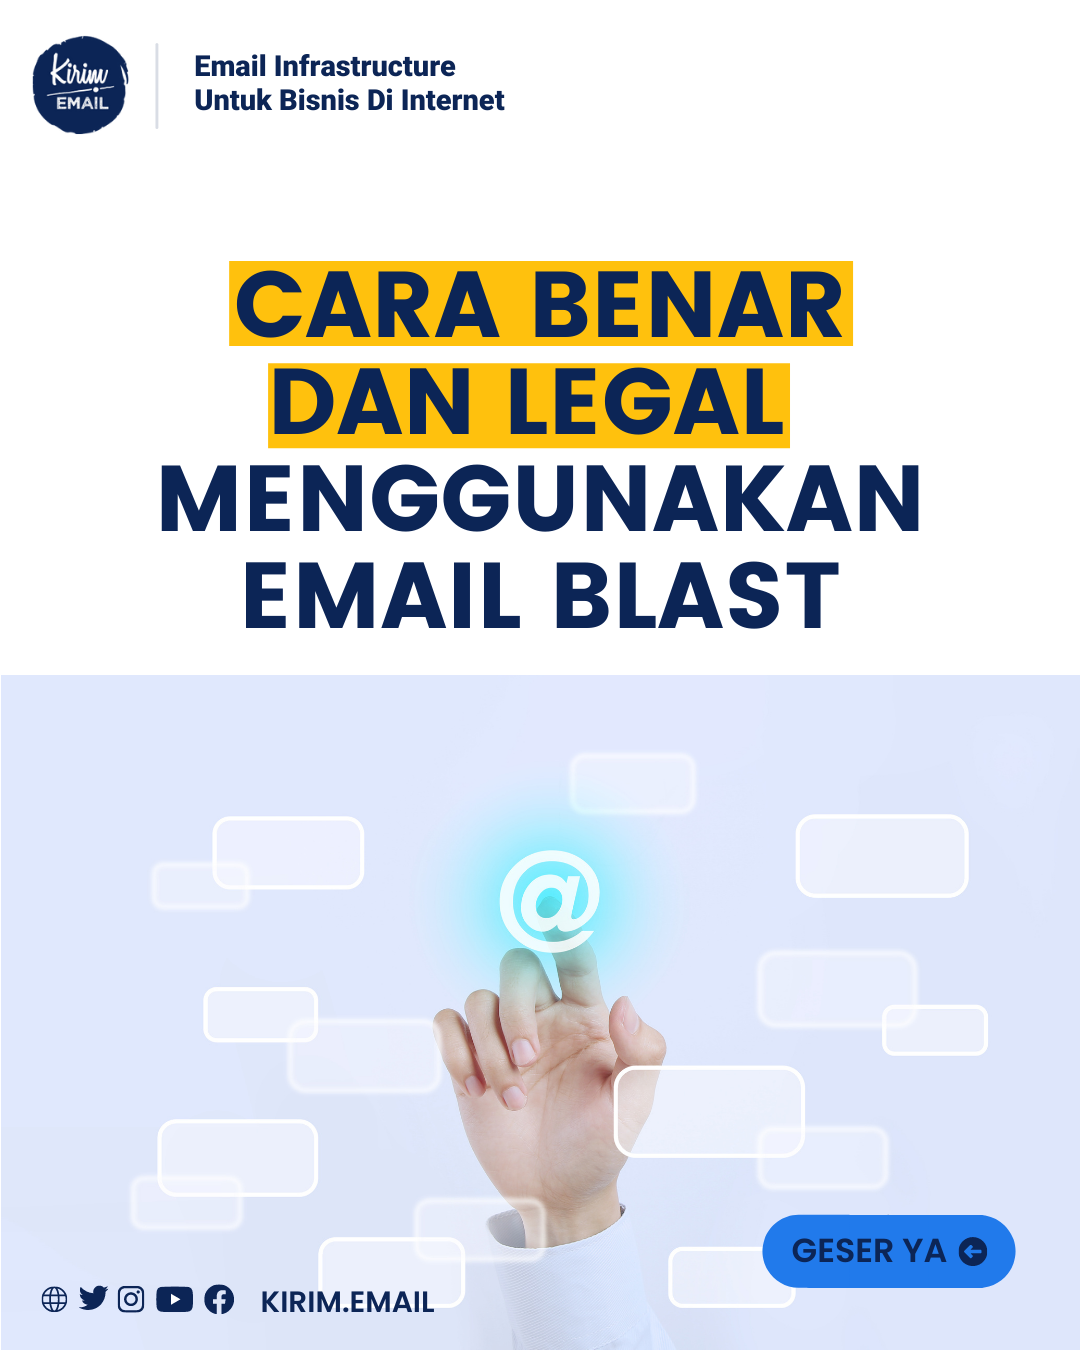 Cara Benar Dan Legal Menggunakan Email Blast